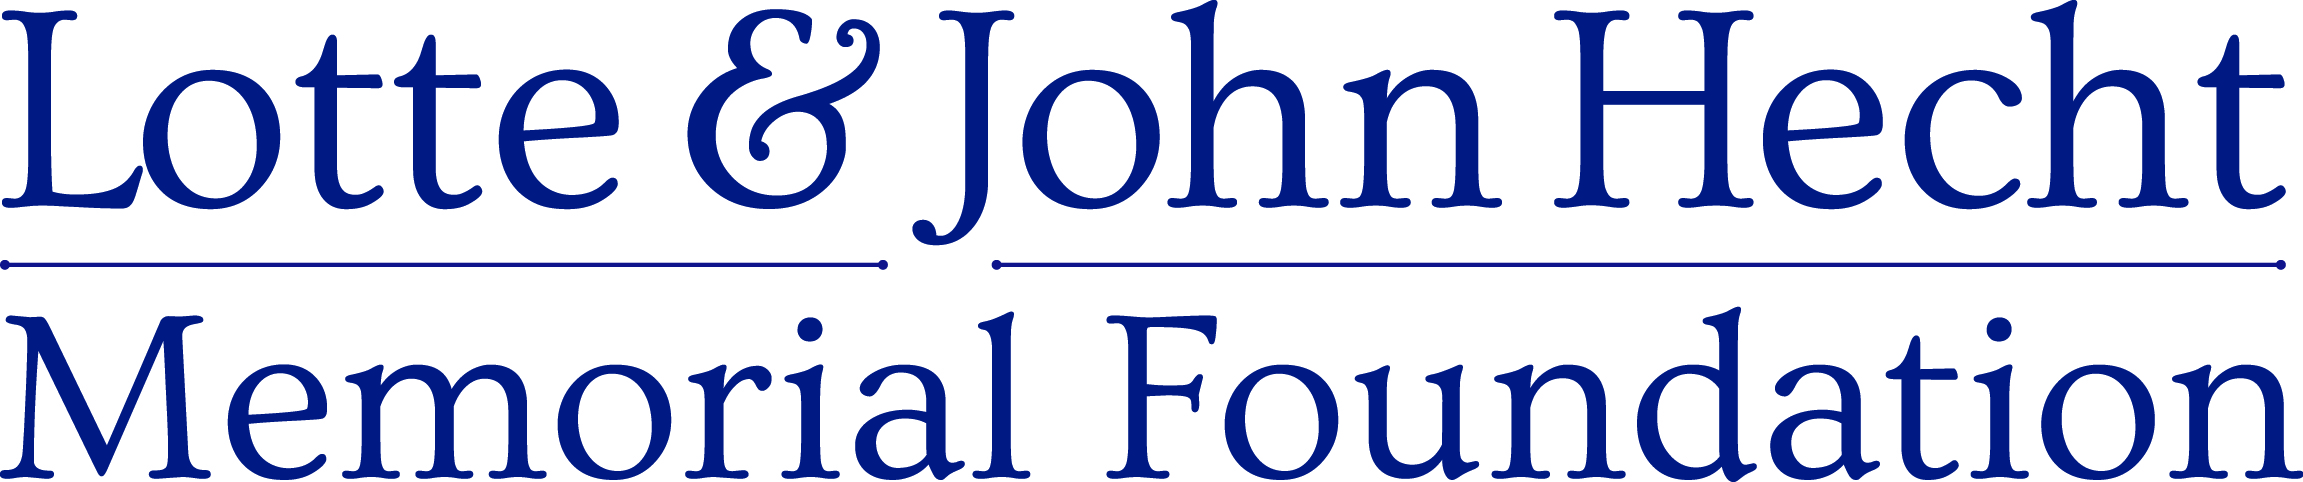 Lotte & John Hecht Memorial Foundation